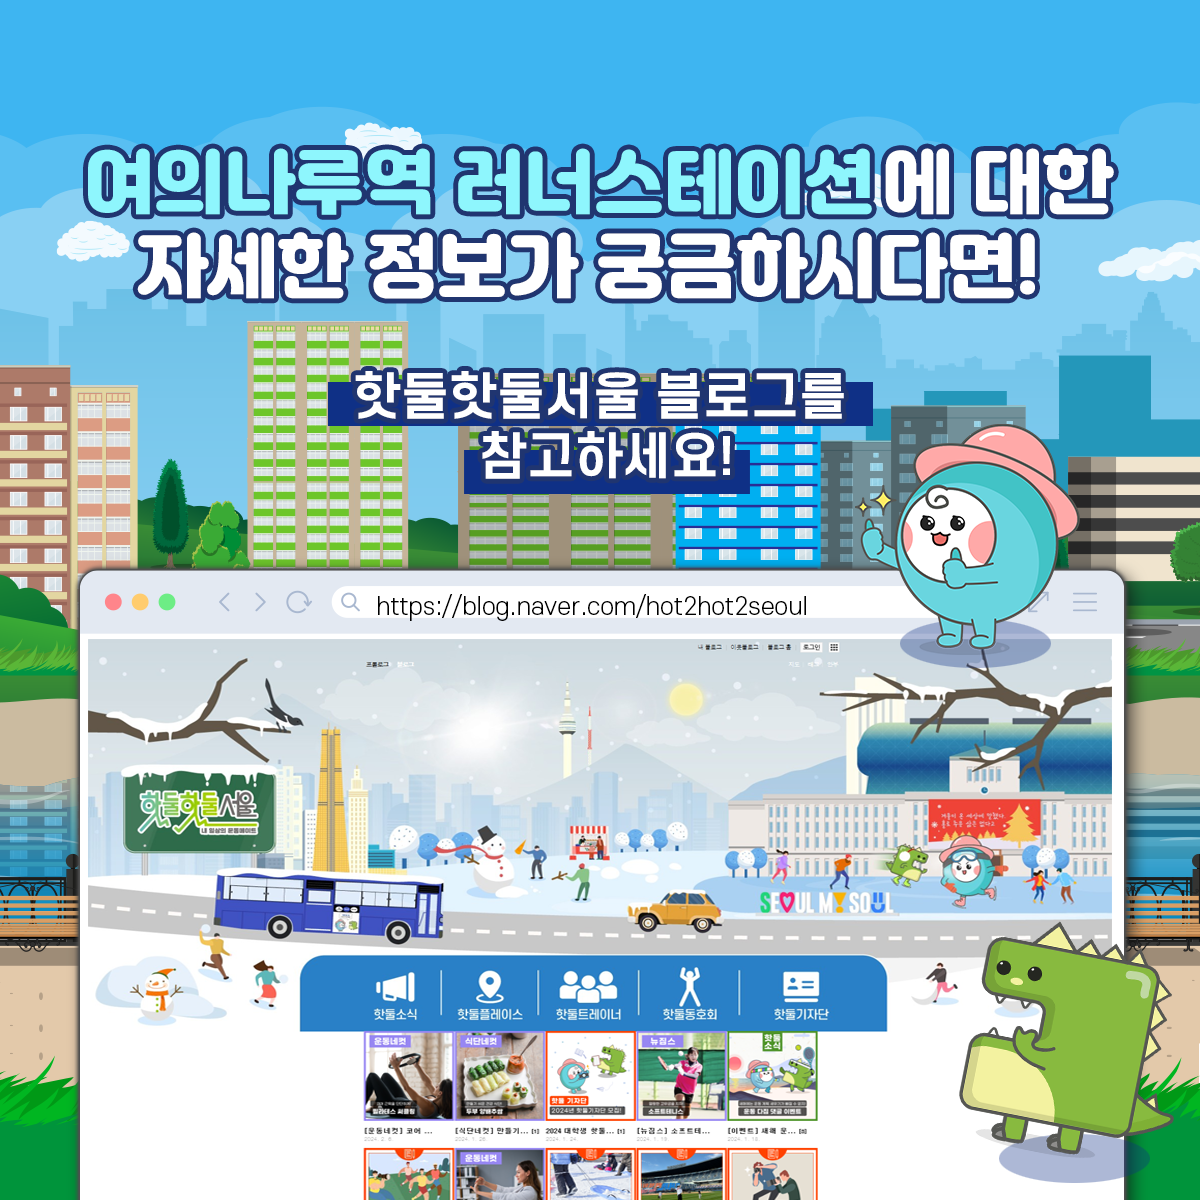 
여의나루역 러너스테이션에 대한 자세한 정보가 궁금하시다면 핫둘핫둘 서울블로그를 참고하세요!
